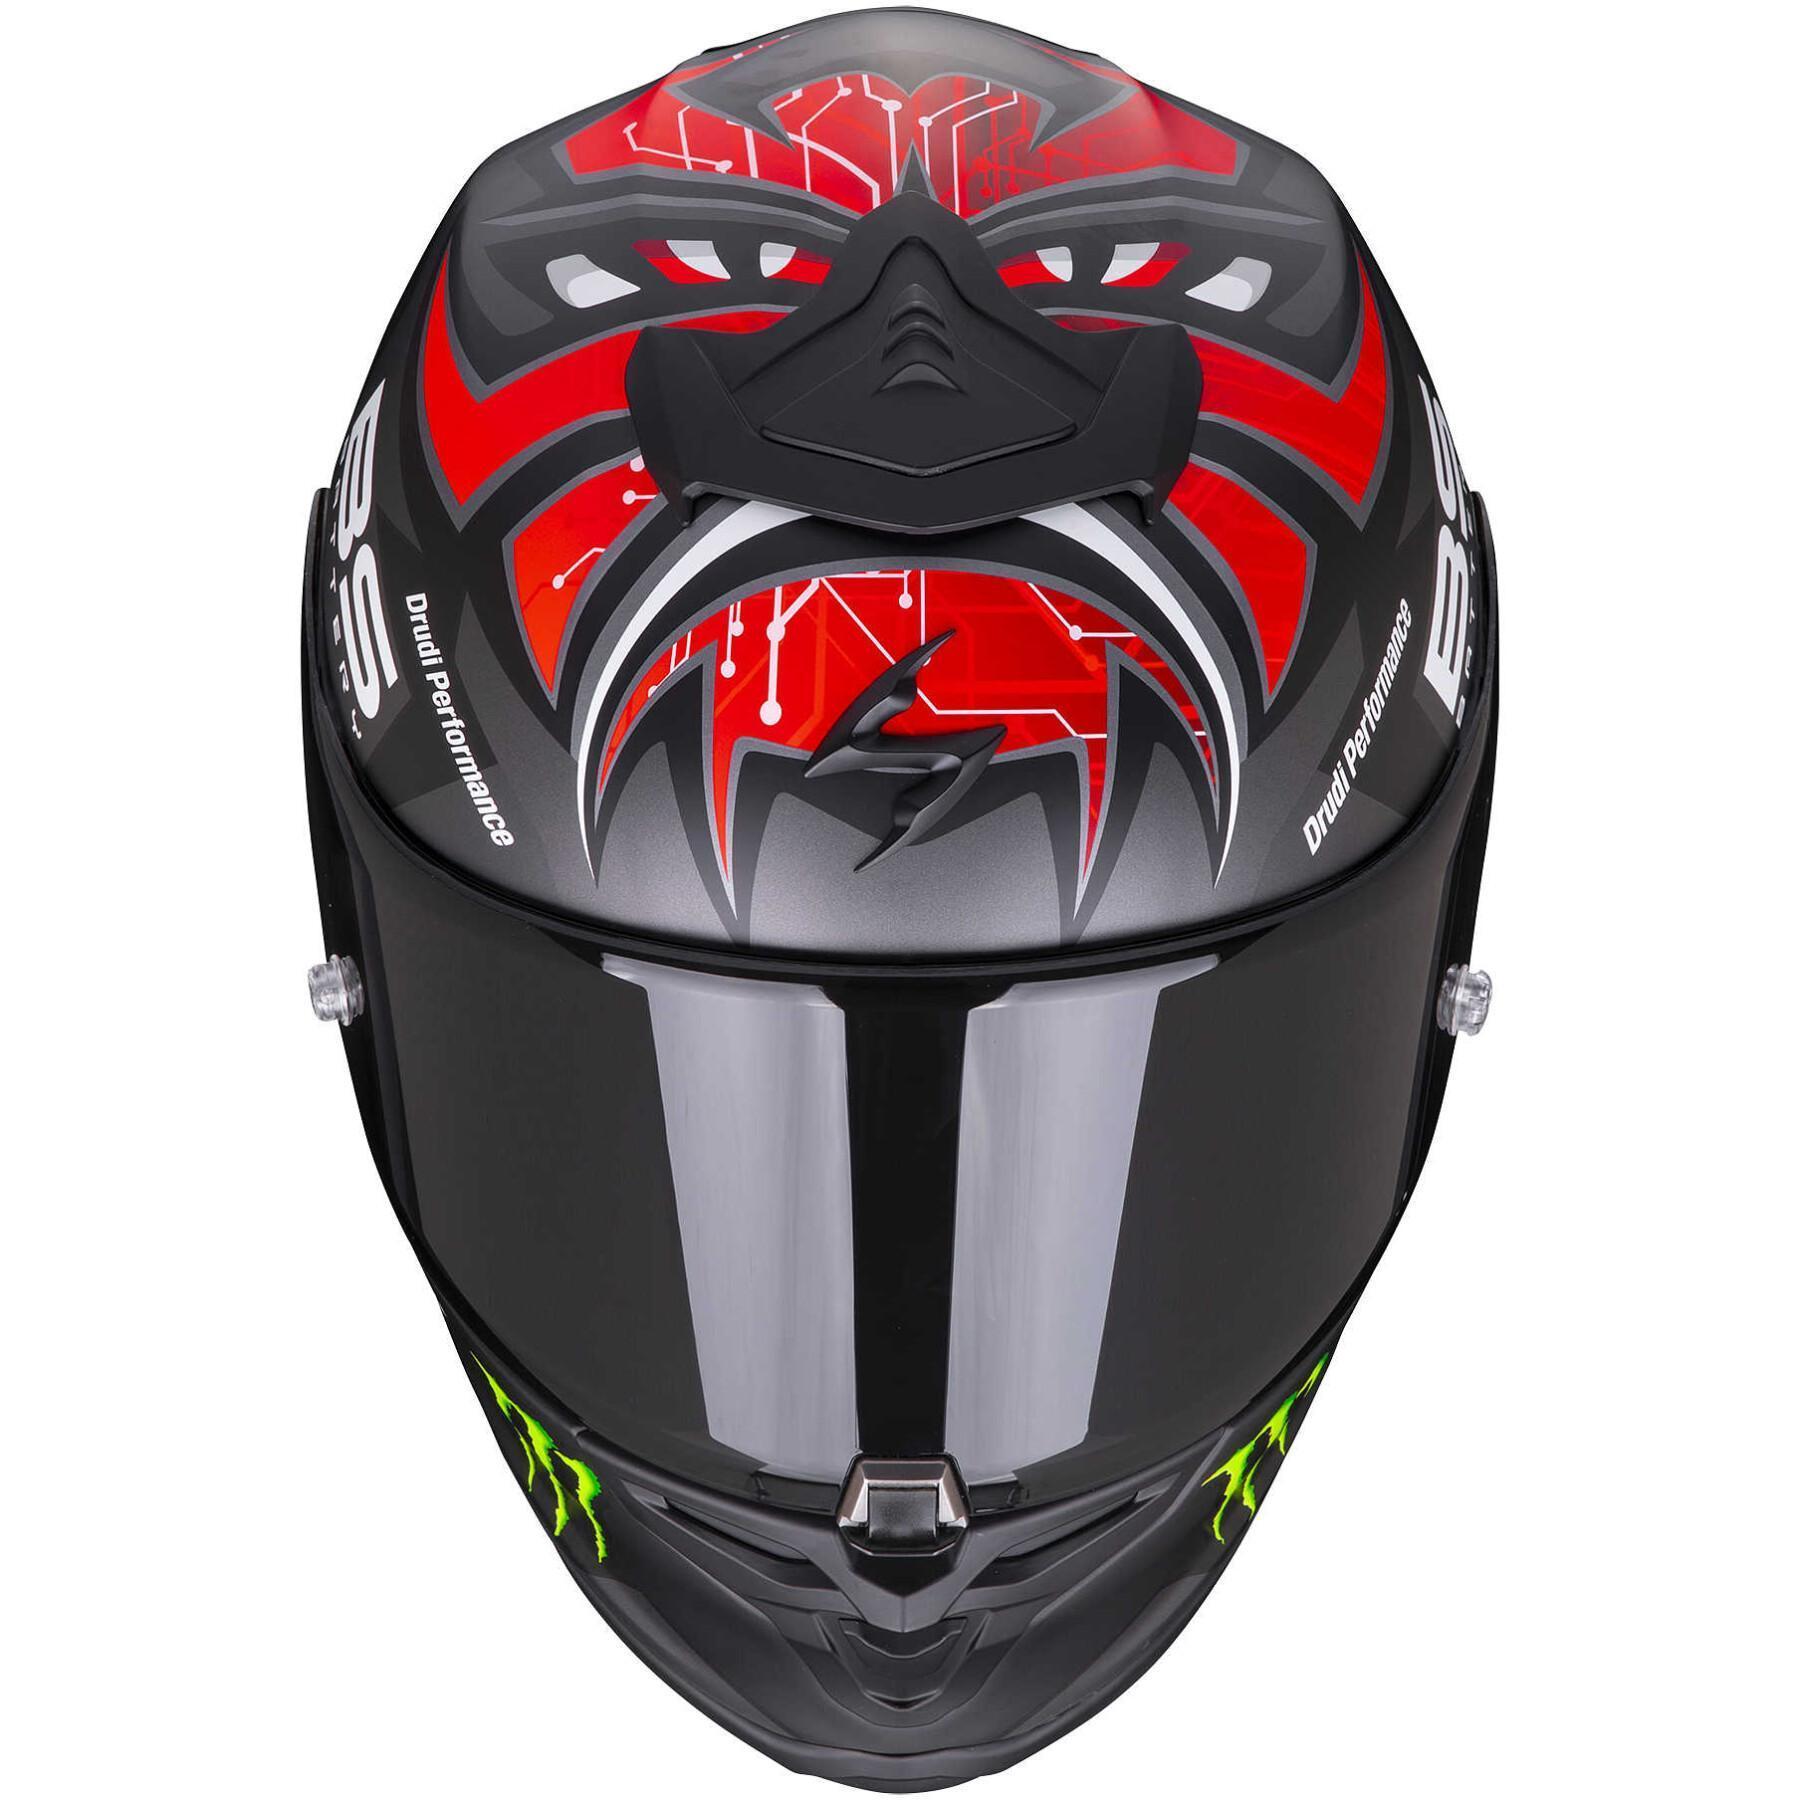 Full face helmet Scorpion Exo-R1 Air Fabio Monster replica